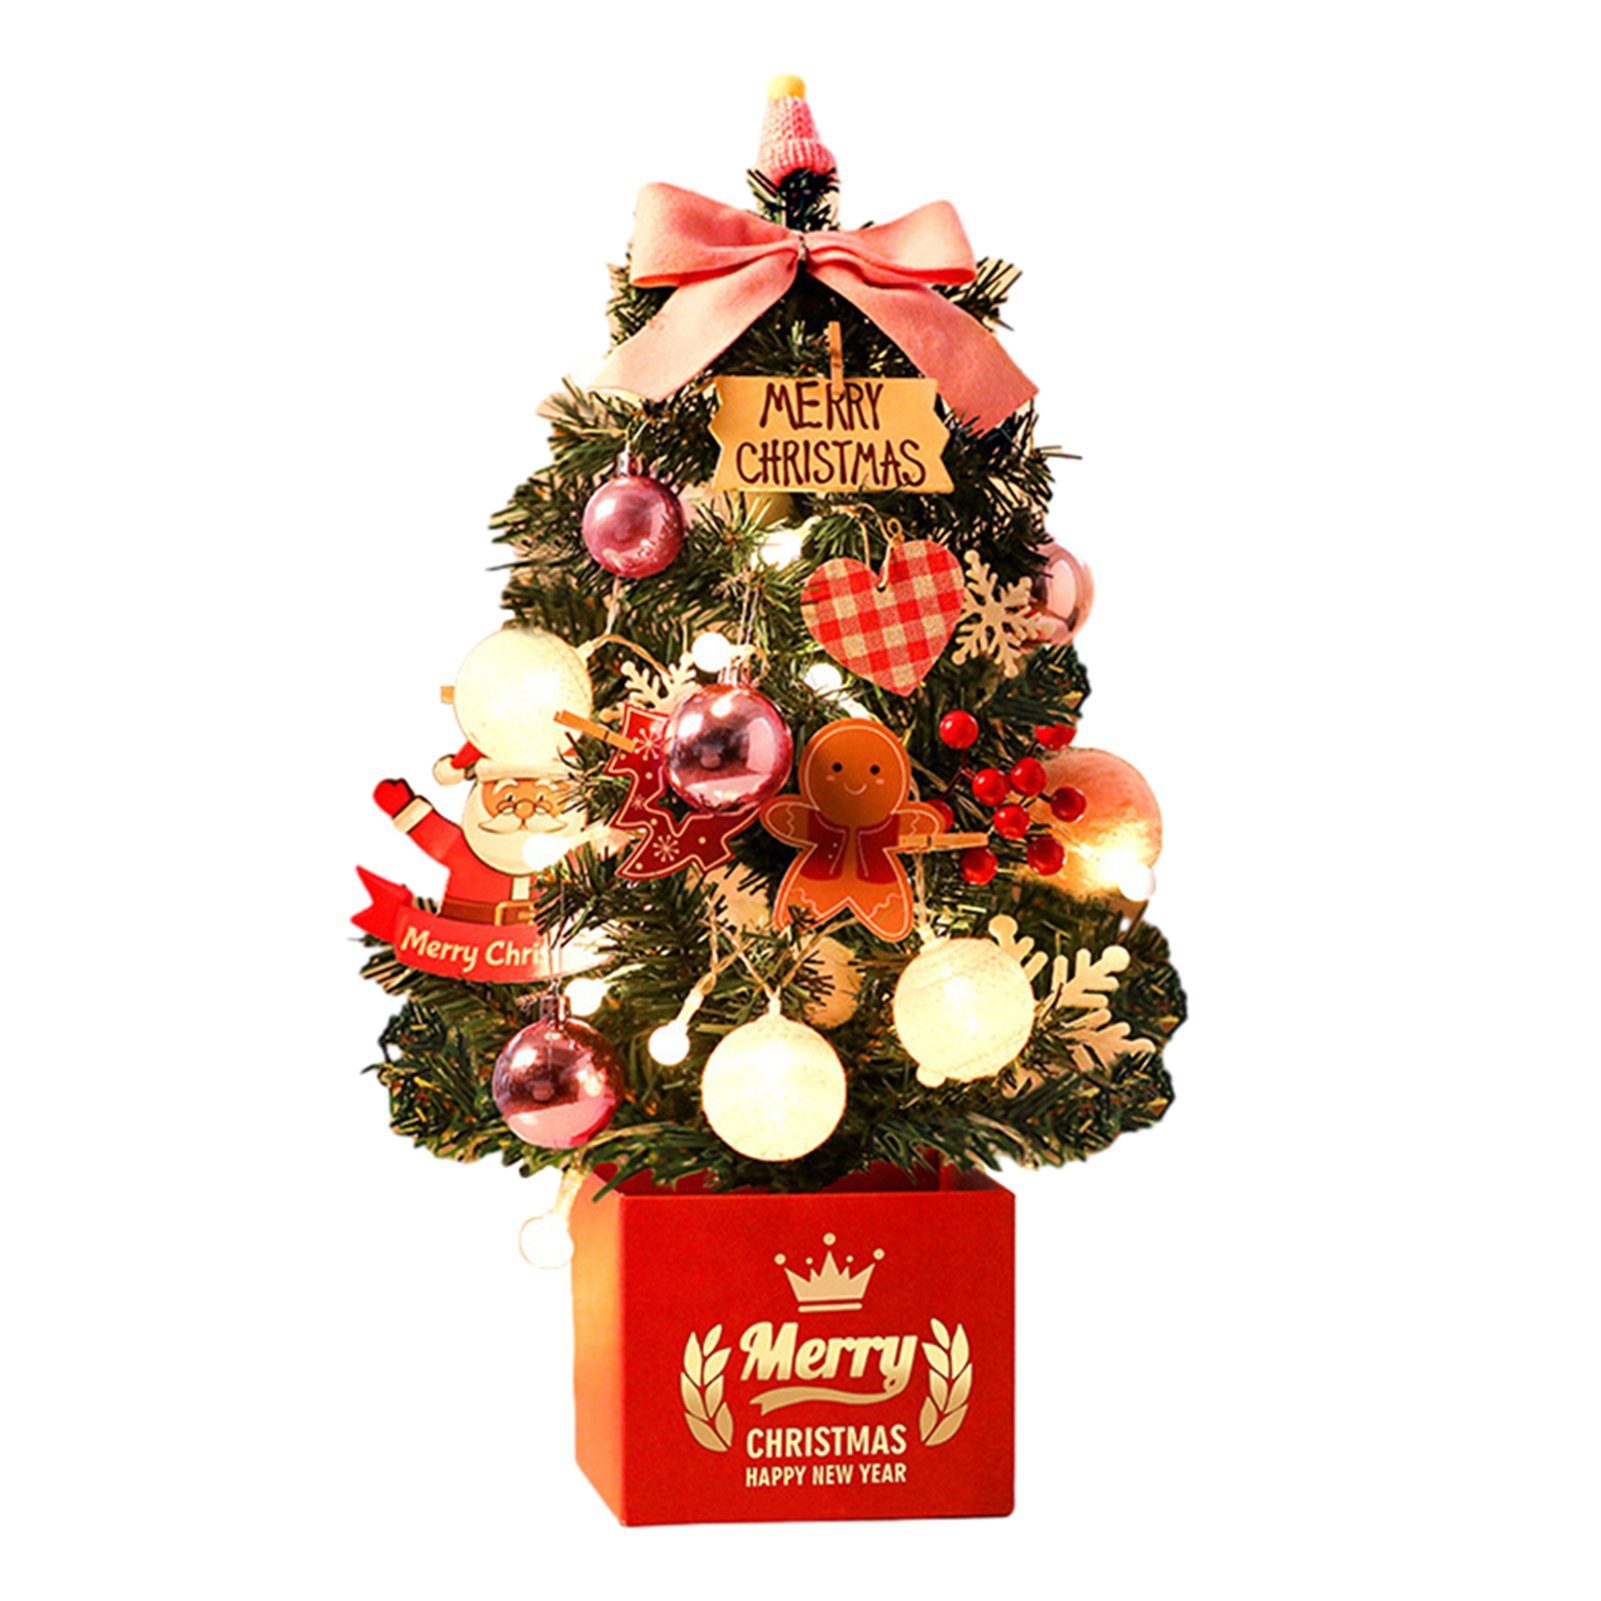 Blusmart Christbaumschmuck Mini-Weihnachtsbaumschmuck, 45 Cm, Rot/Gold/Rosa, Personalisierte